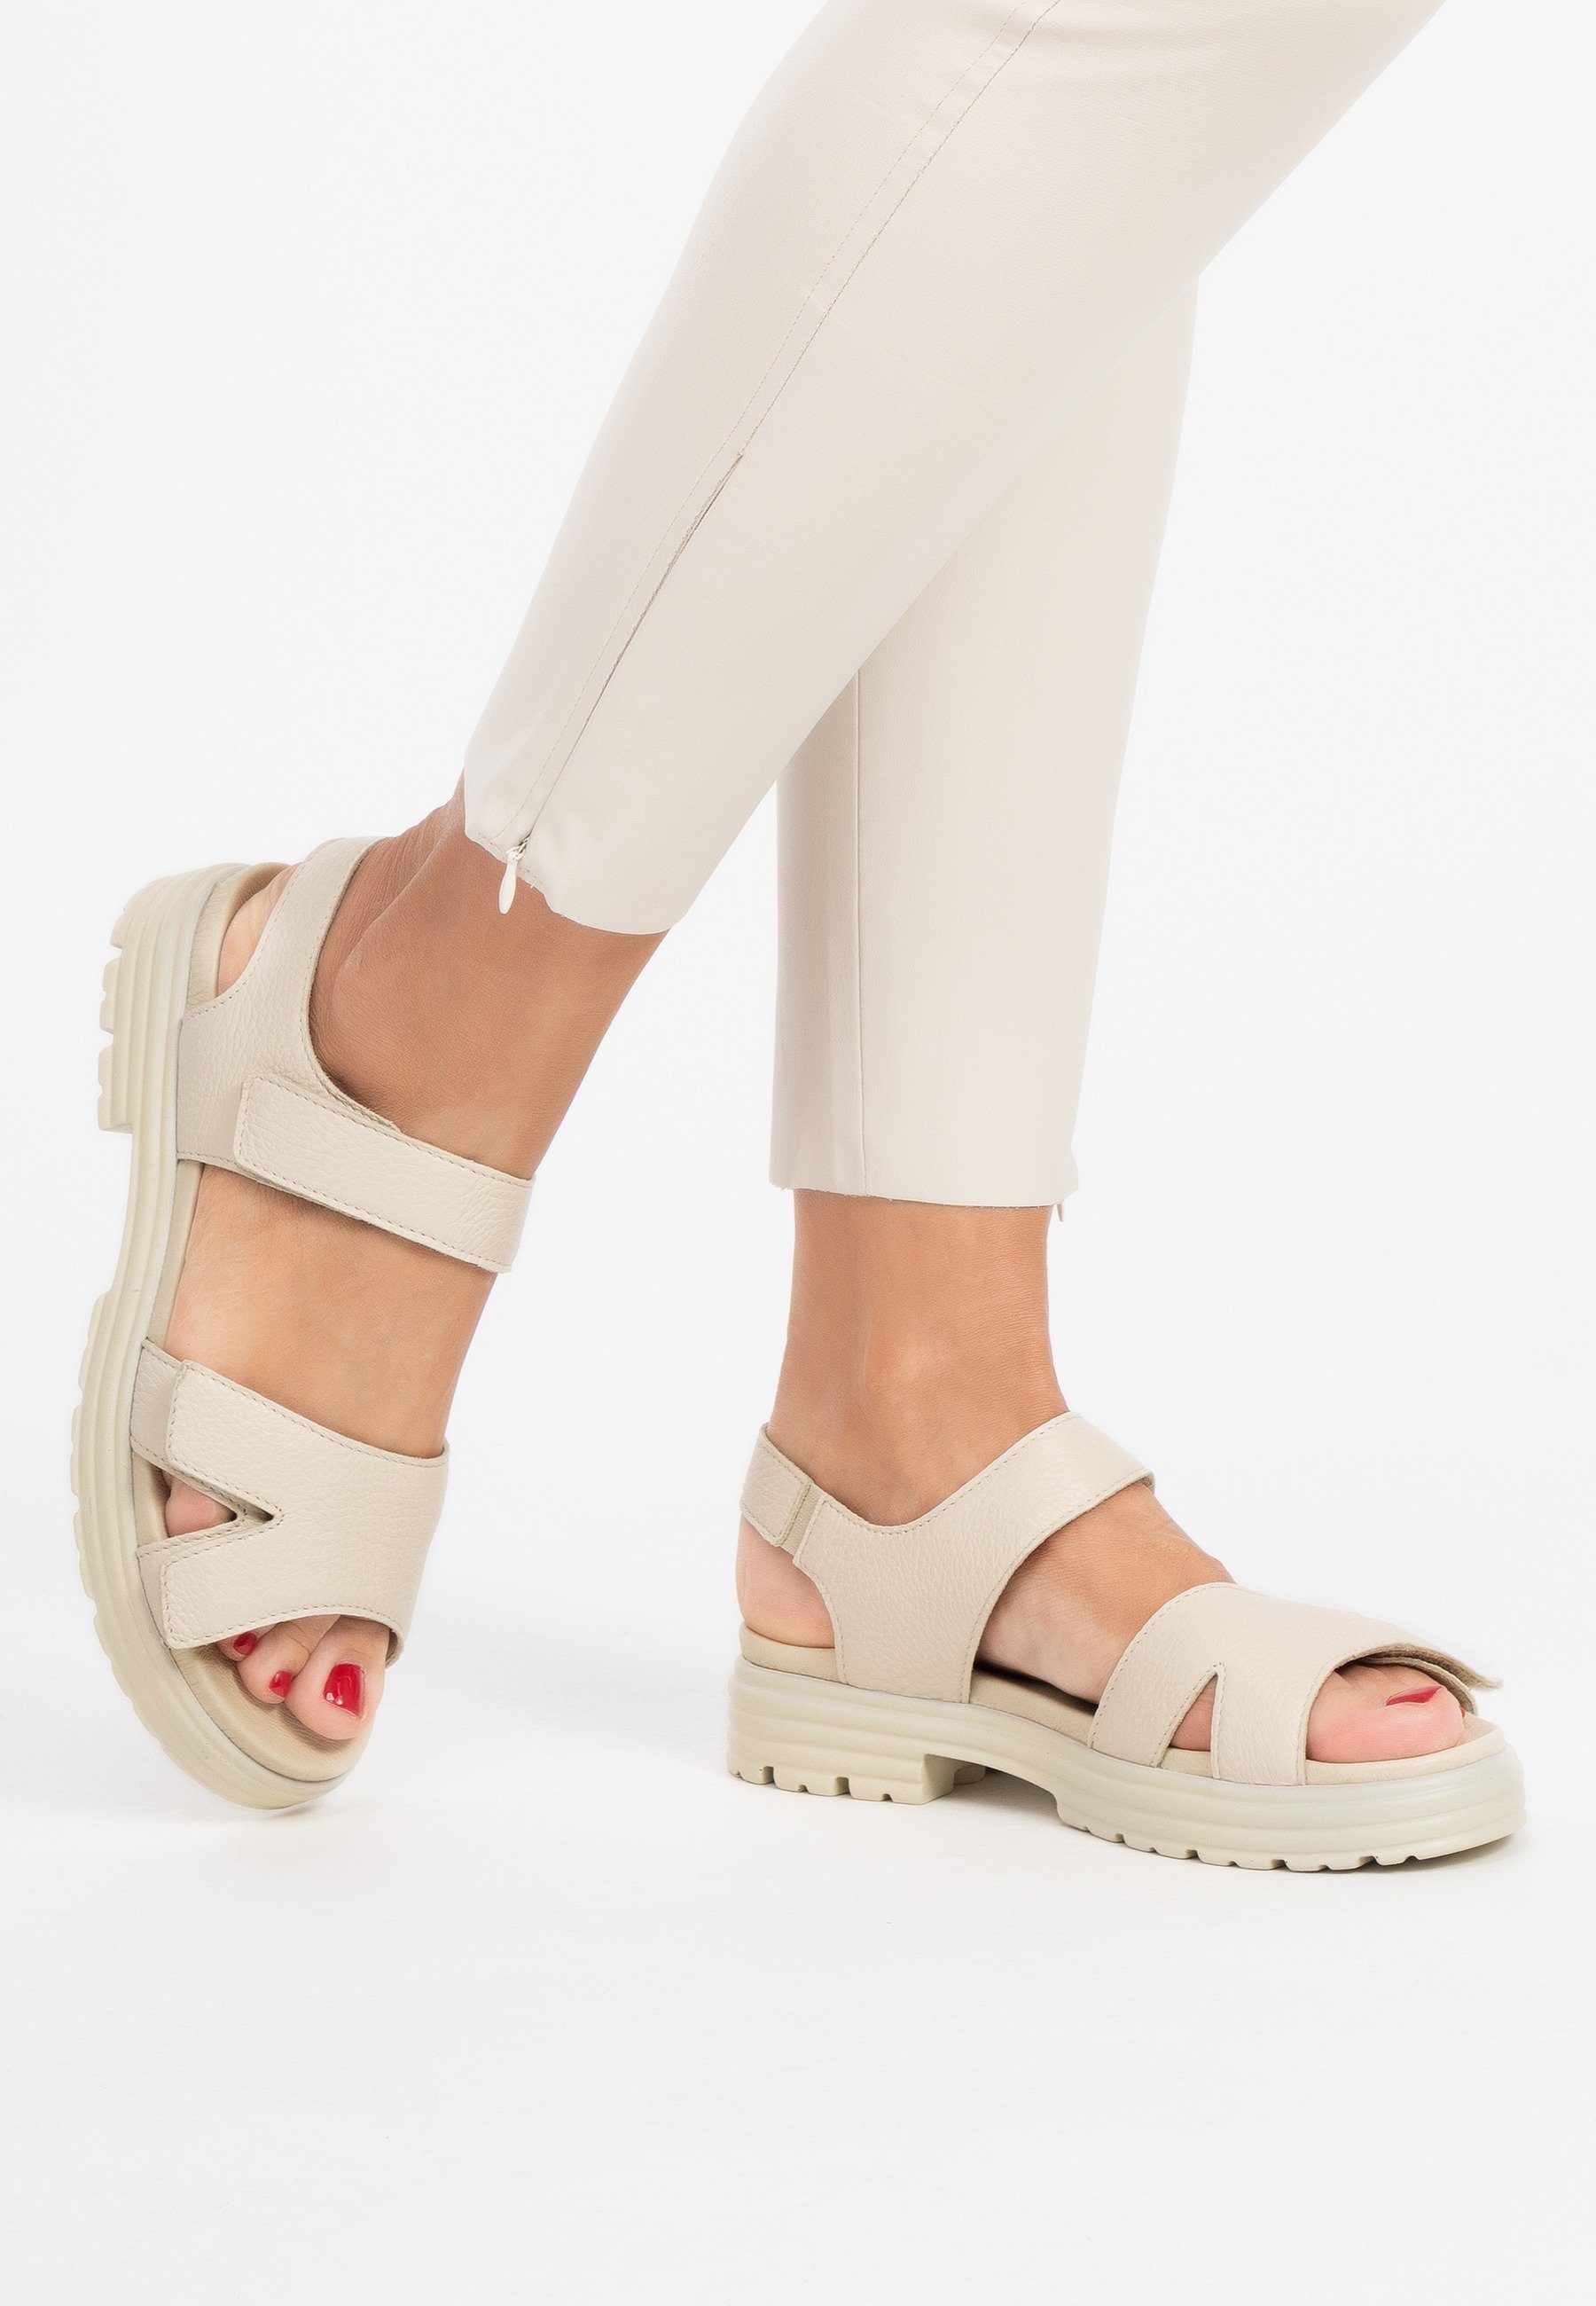 Damenschuhe Hirschleder Sandale Sandale beige vitaform